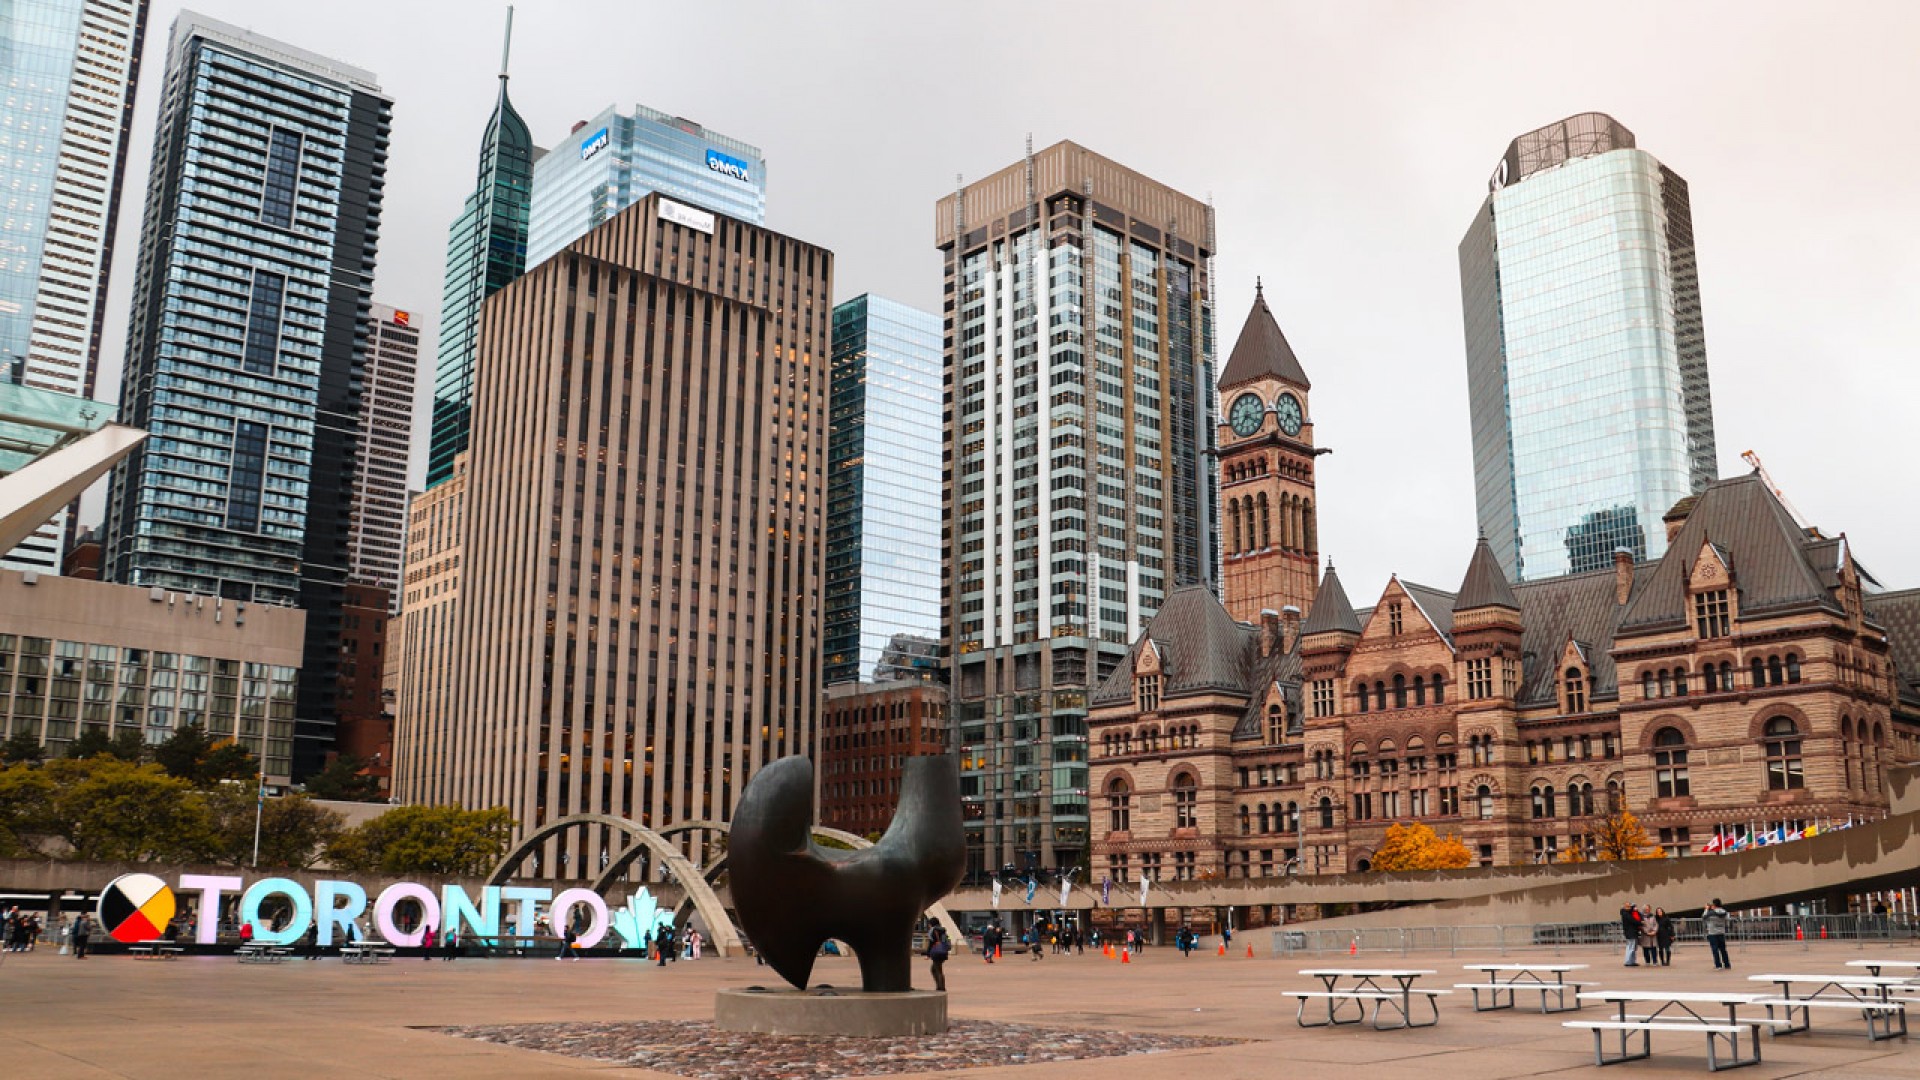 Kinh nghiệm du học Canada: 4 địa điểm giúp kết bạn mới hiệu quả tại Toronto